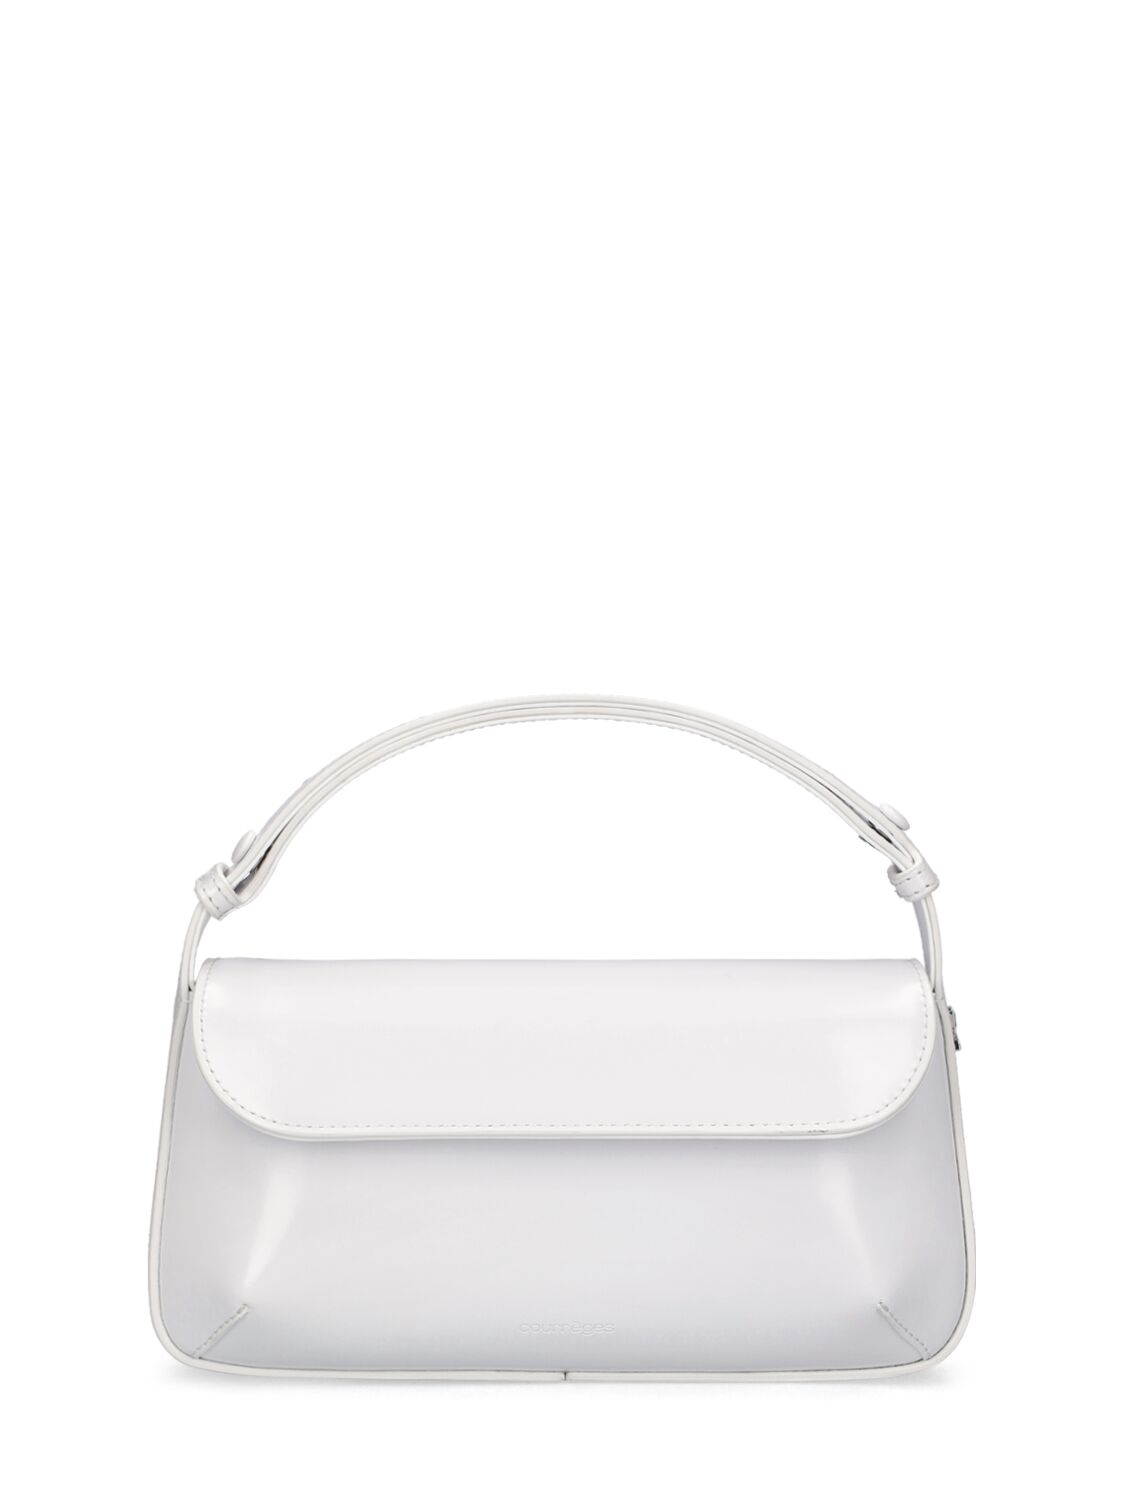 Courrèges Sleek Leather Shoulder Bag In Heritage White